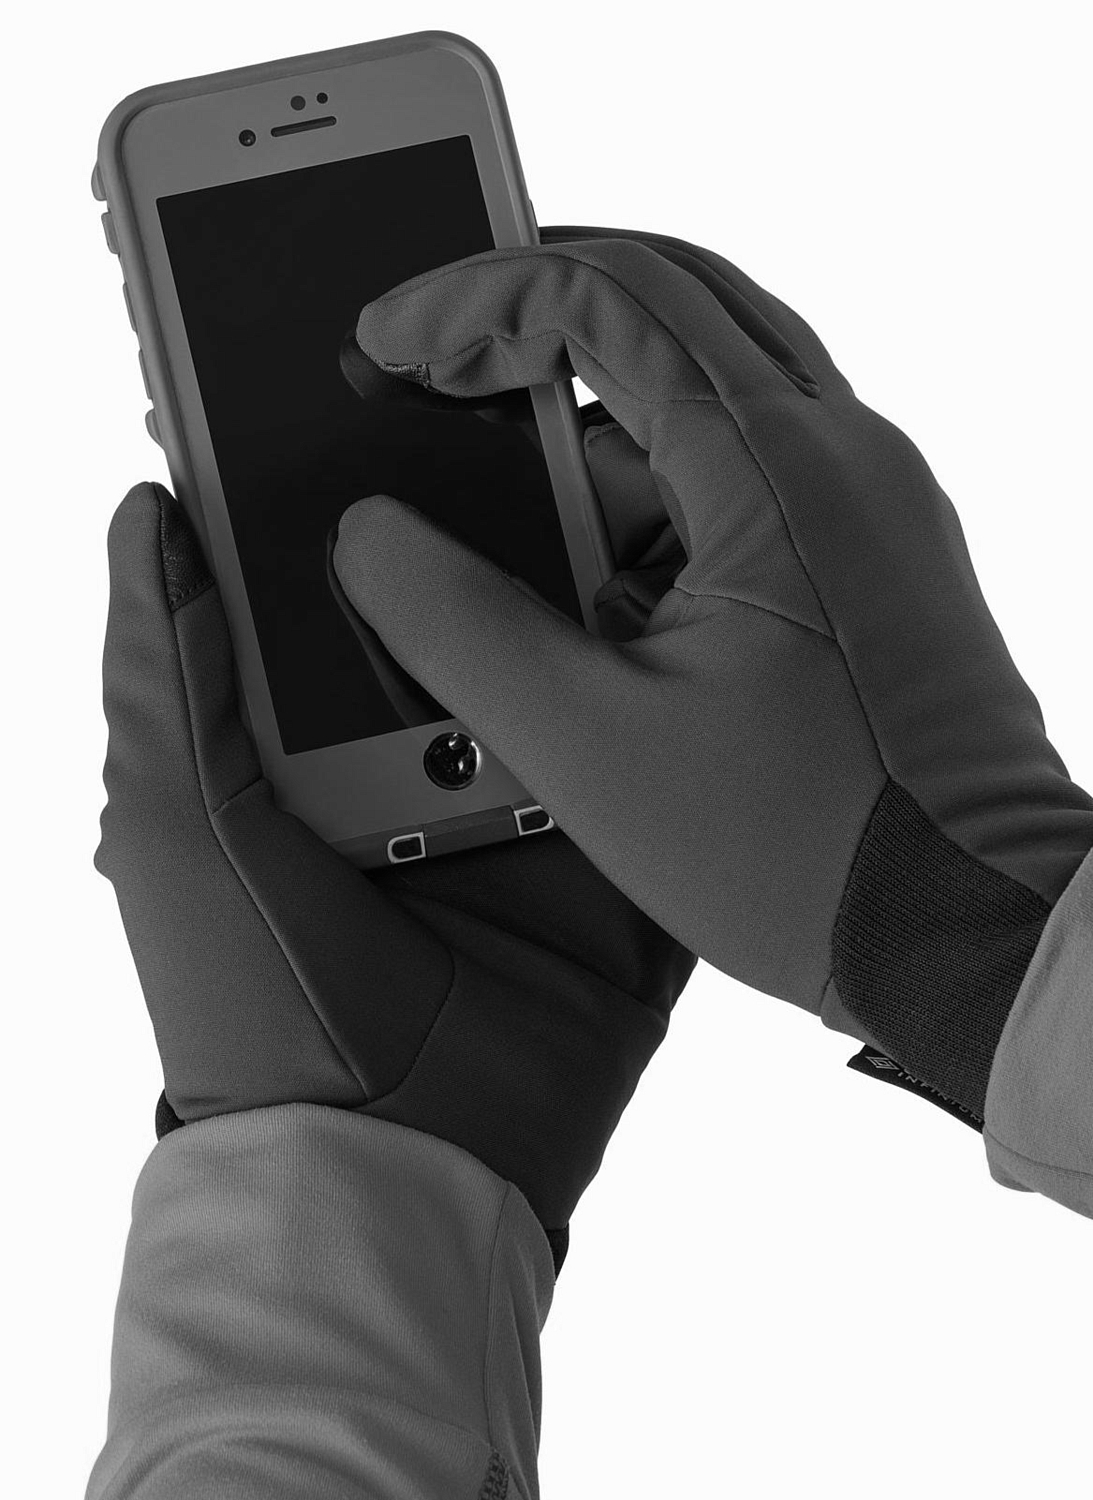 Перчатки горные Arcteryx 2020-21 Venta glove Black